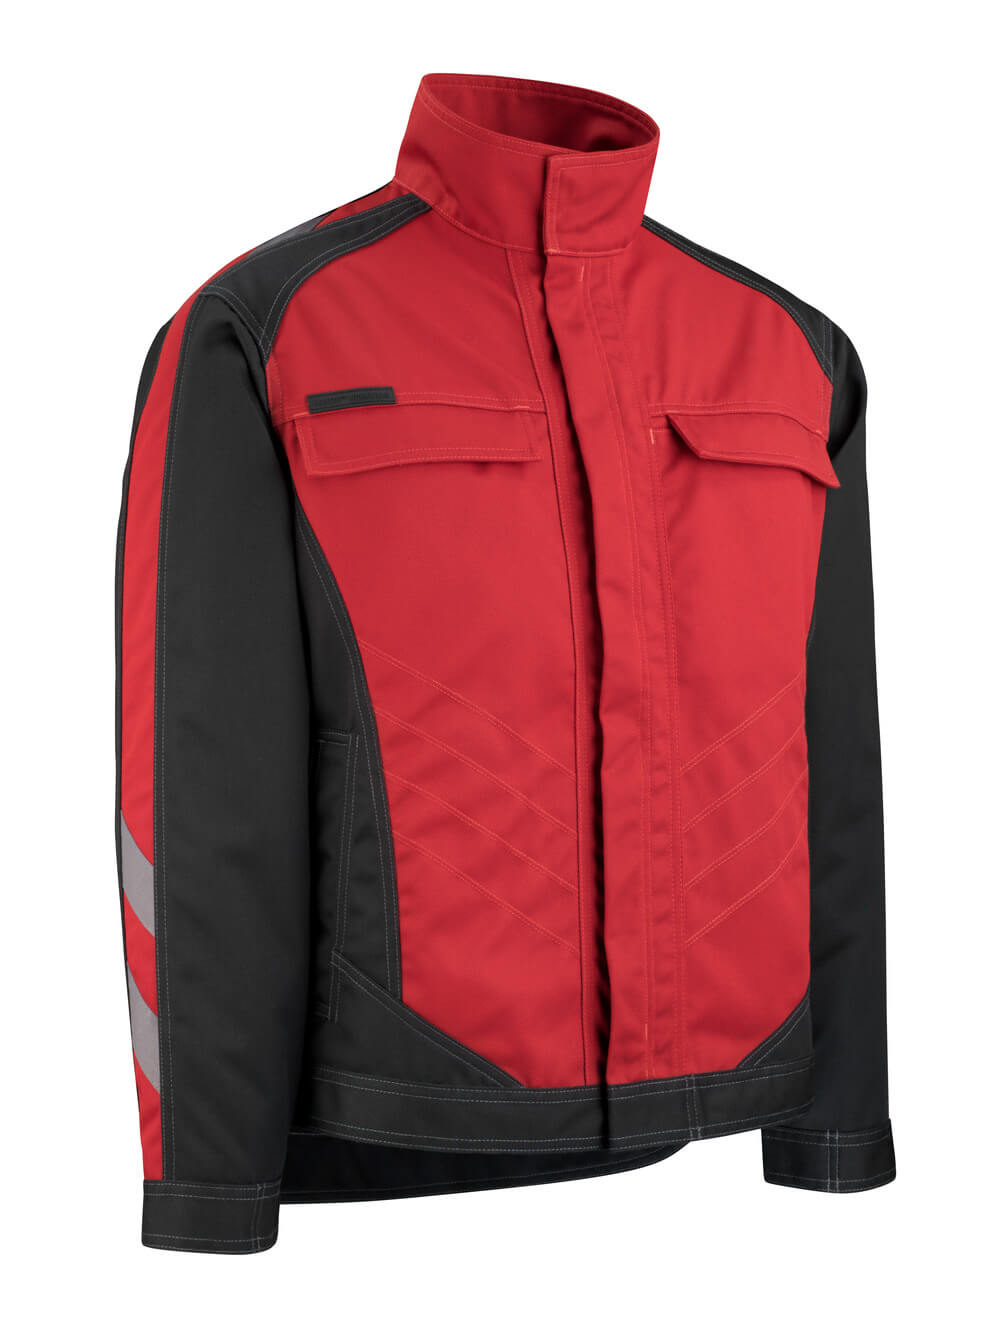 MASCOT® UNIQUE Jacke »Mainz« Gr. 2XL, rot/schwarz - erhältlich bei ♡ HUG Technik ✓